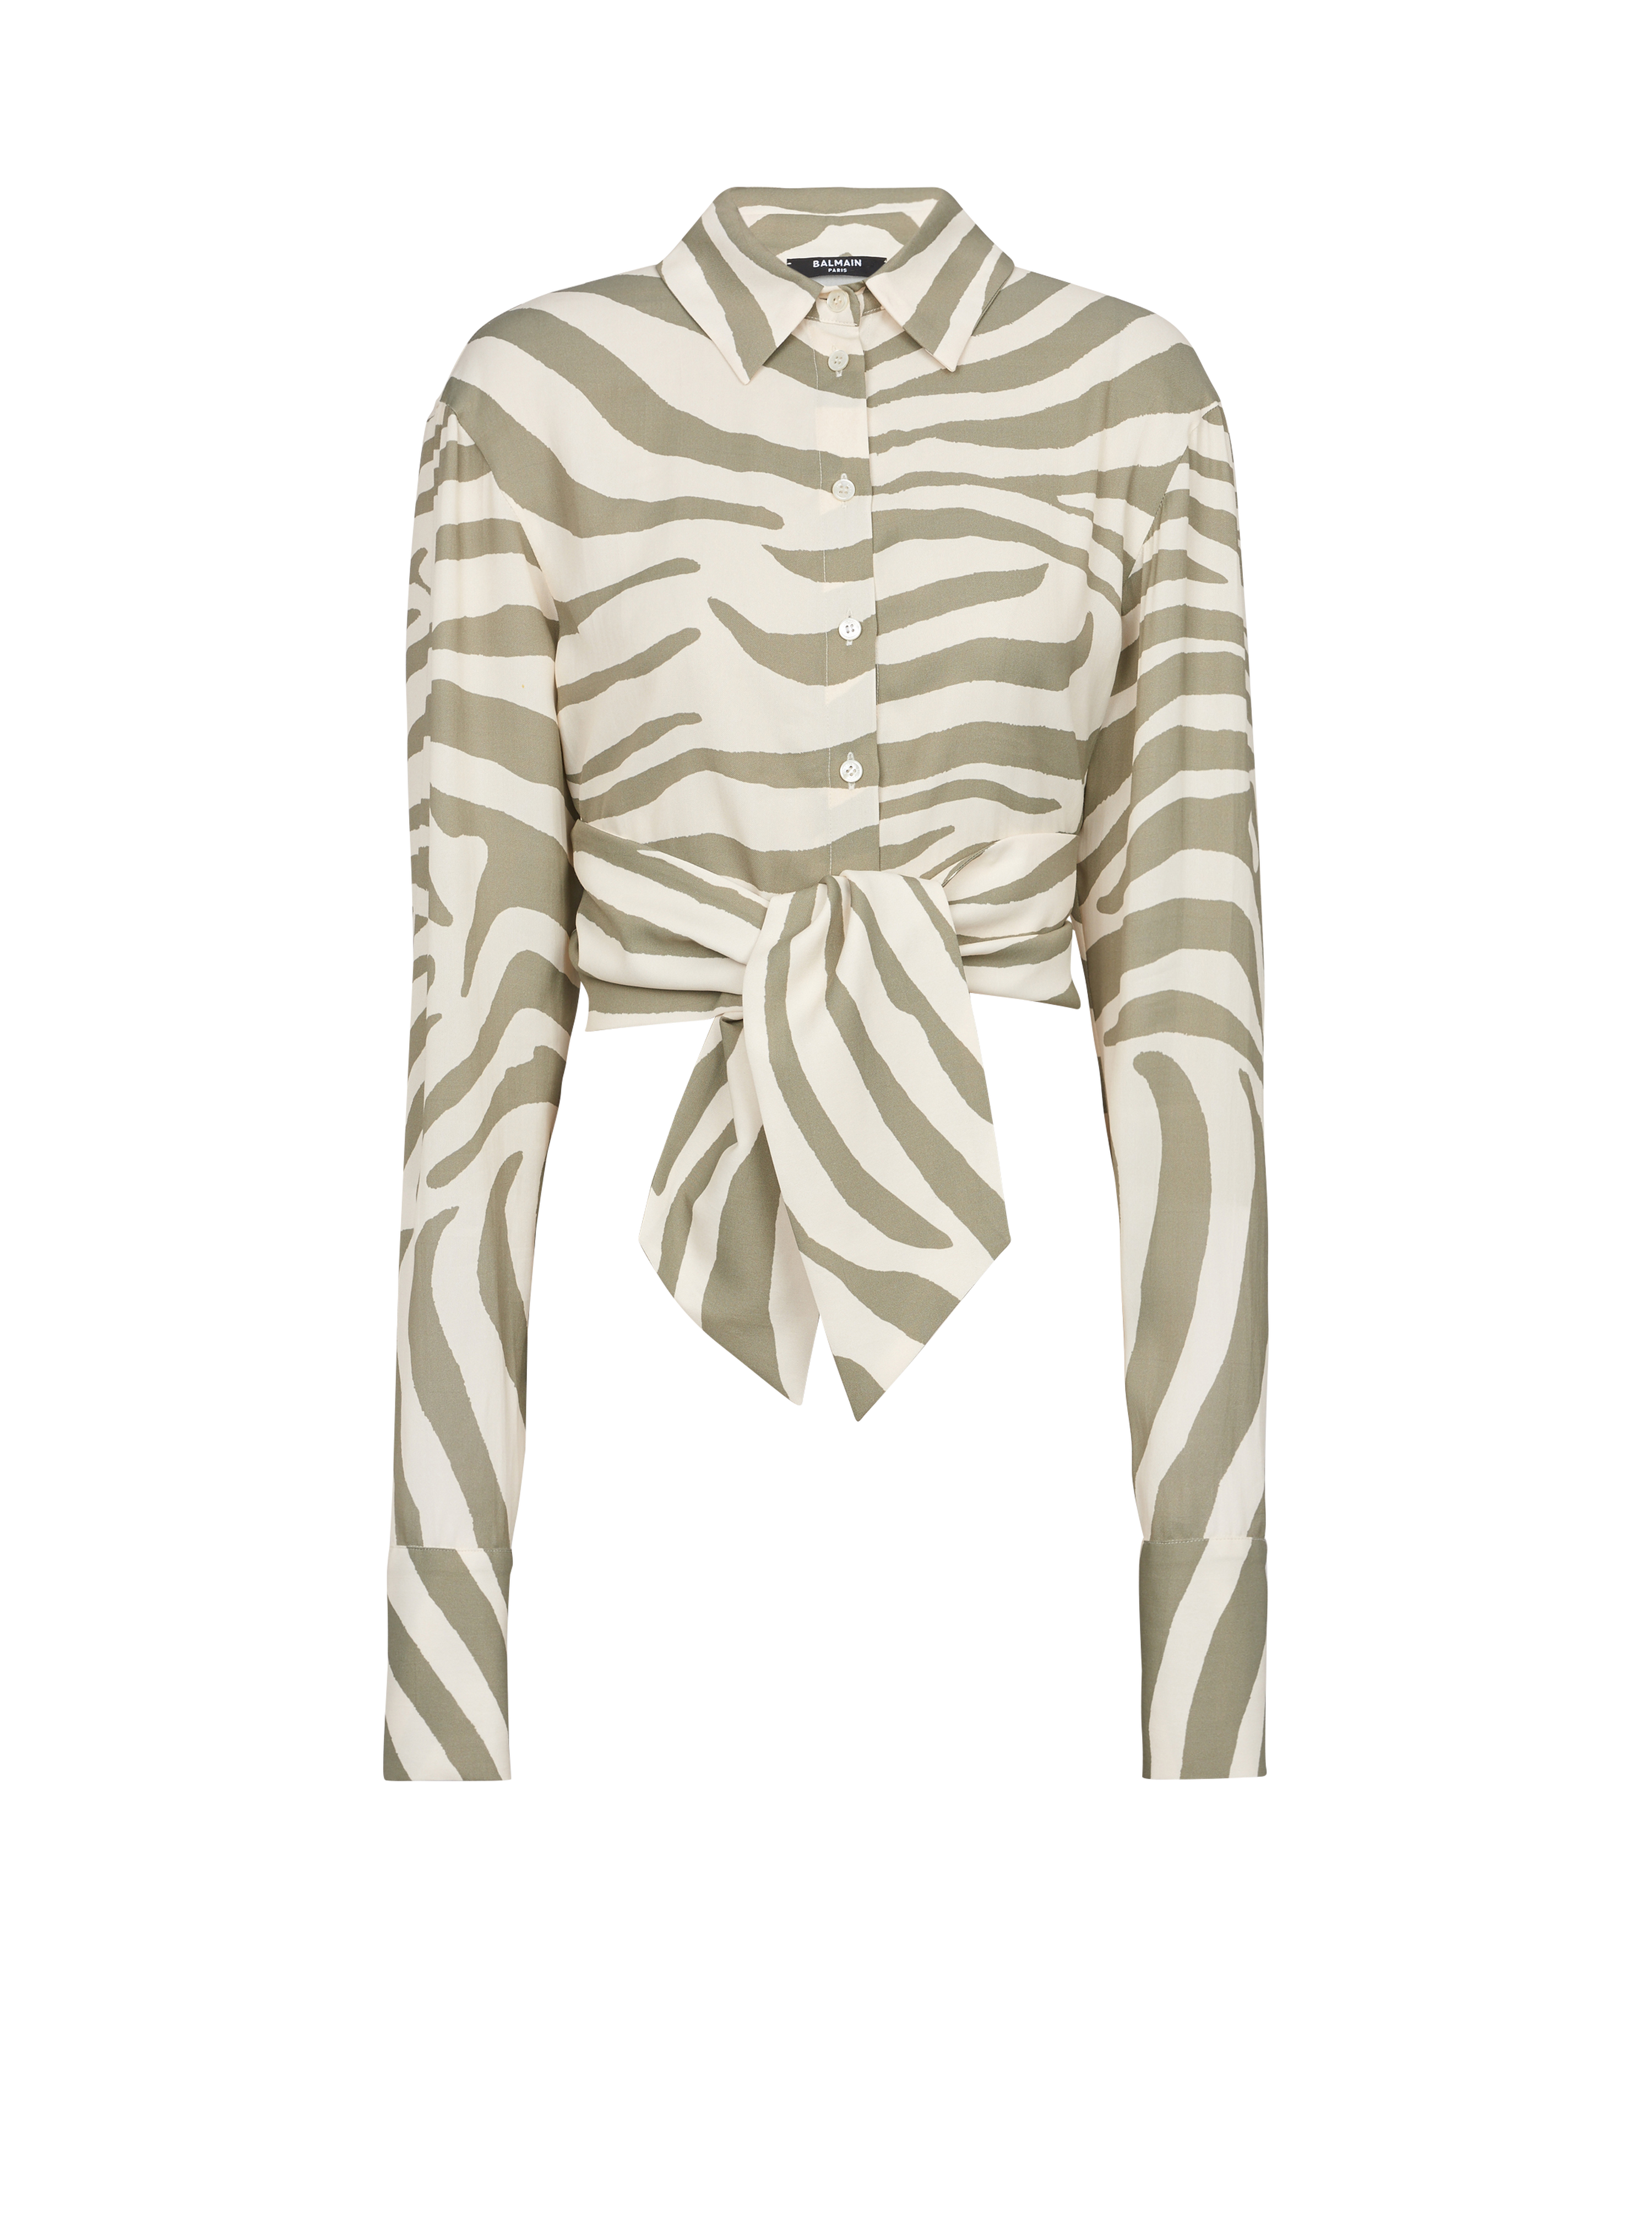 Zebra print shirt, khaki